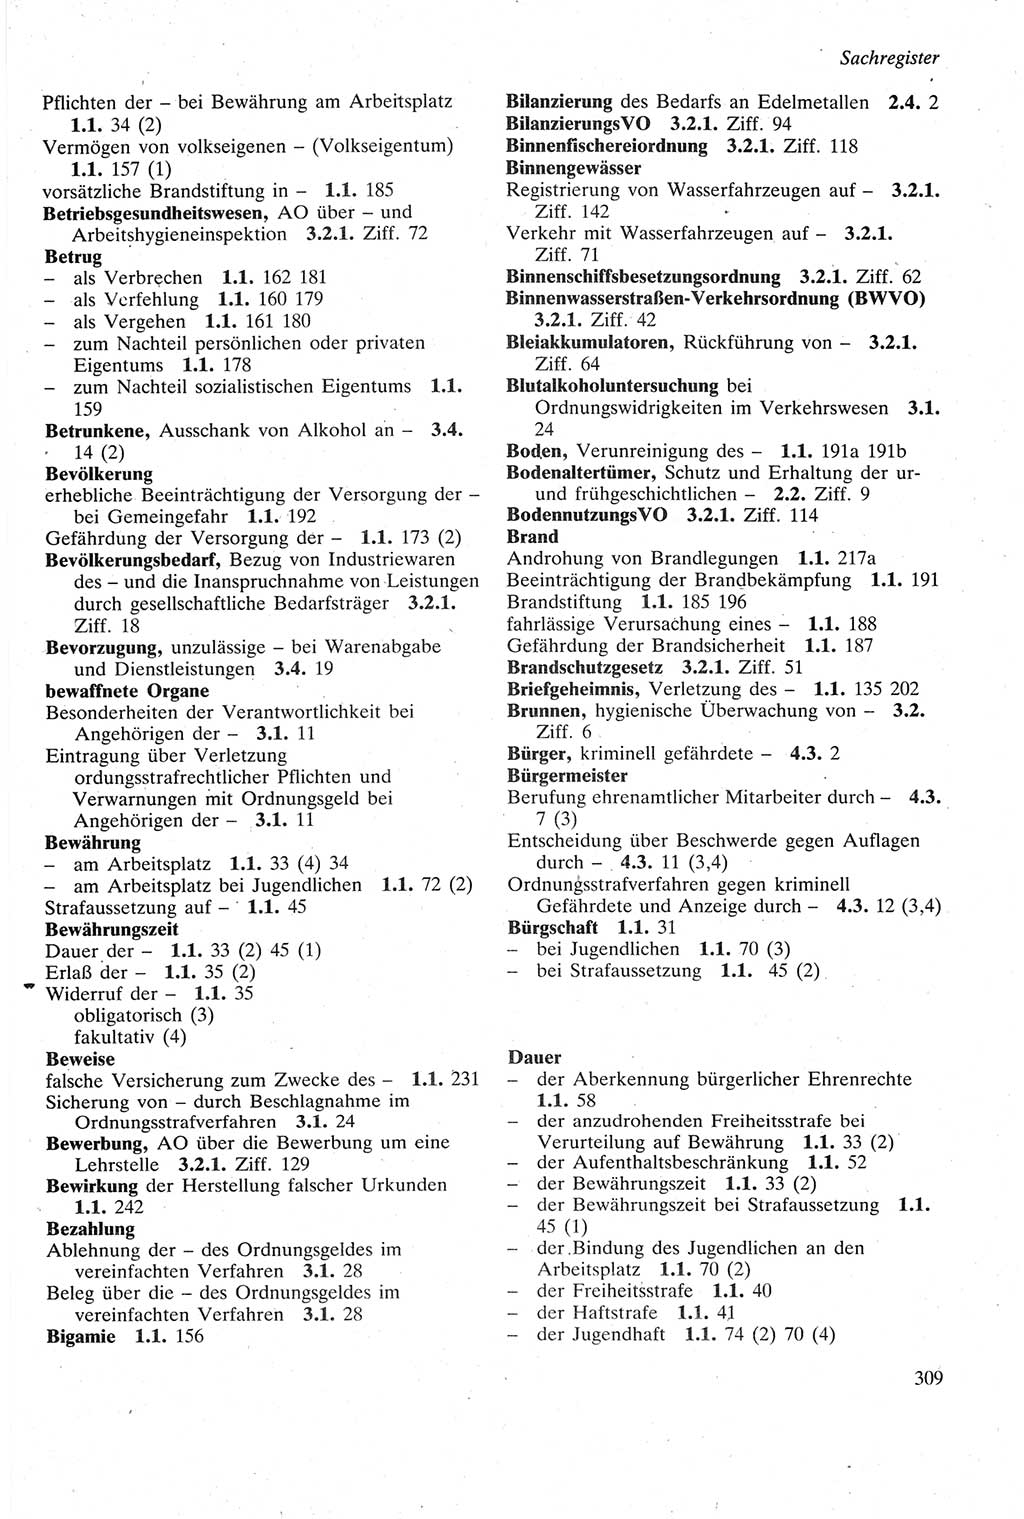 Strafgesetzbuch (StGB) der Deutschen Demokratischen Republik (DDR) sowie angrenzende Gesetze und Bestimmungen 1979, Seite 309 (StGB DDR Ges. Best. 1979, S. 309)